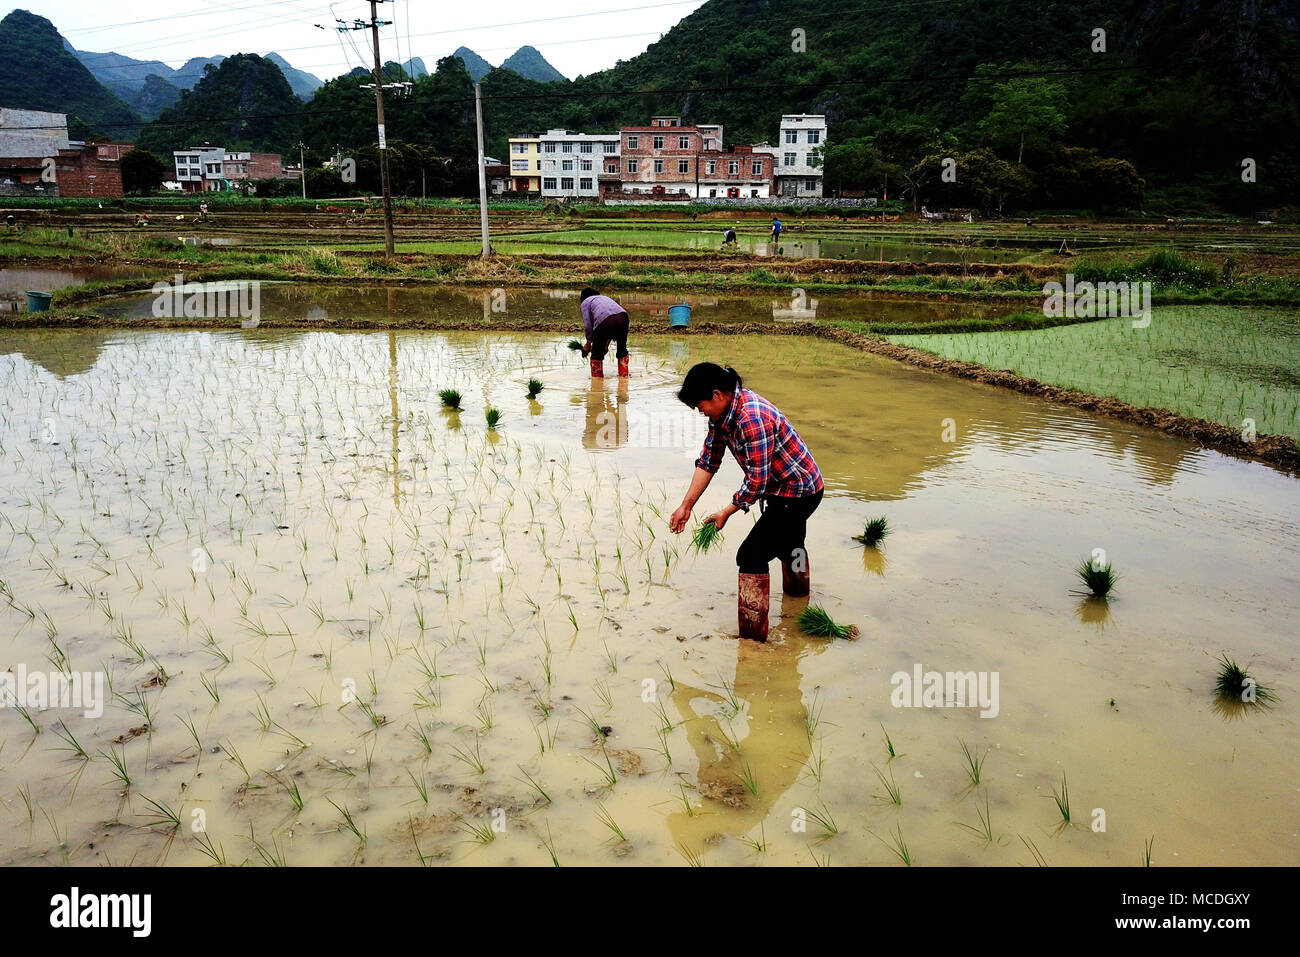 (180416) -- DAHUA, April 16, 2018 (Xinhua) -- Farmers plant rice seedlings in a field at Longkou Village under Dahua Township in Yao Autonomous County of Dahua, south China's Guangxi Zhuang Autonomous Region, April 16, 2018. (Xinhua/Zhang Ailin) (mp) Stock Photo